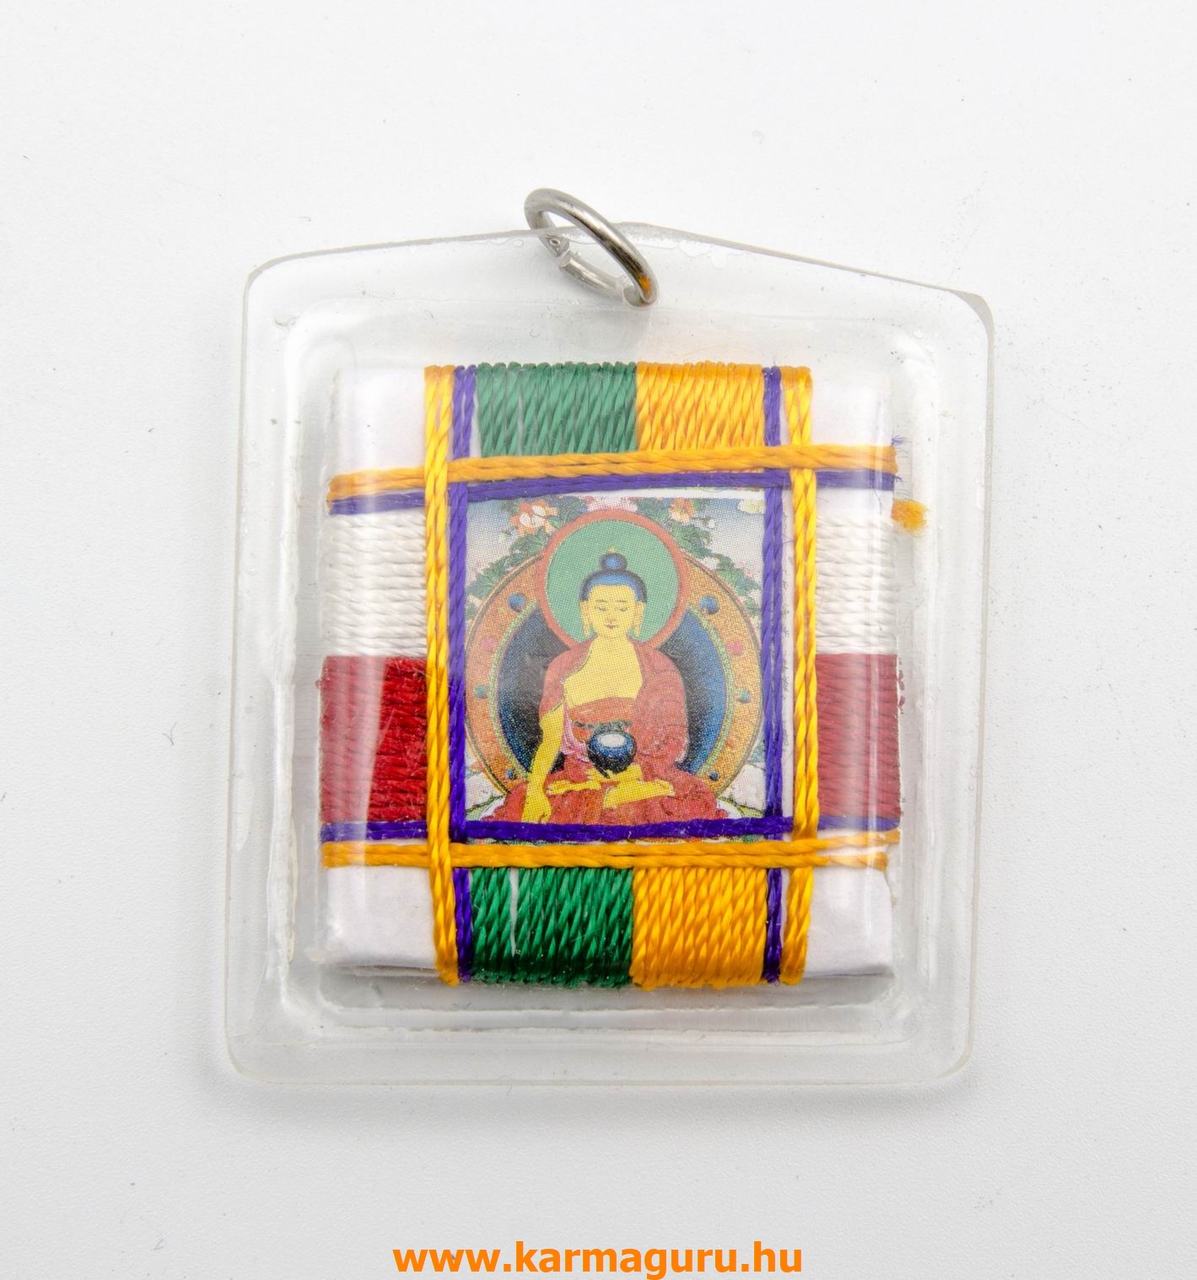 Shakyamuni Buddha talizmán